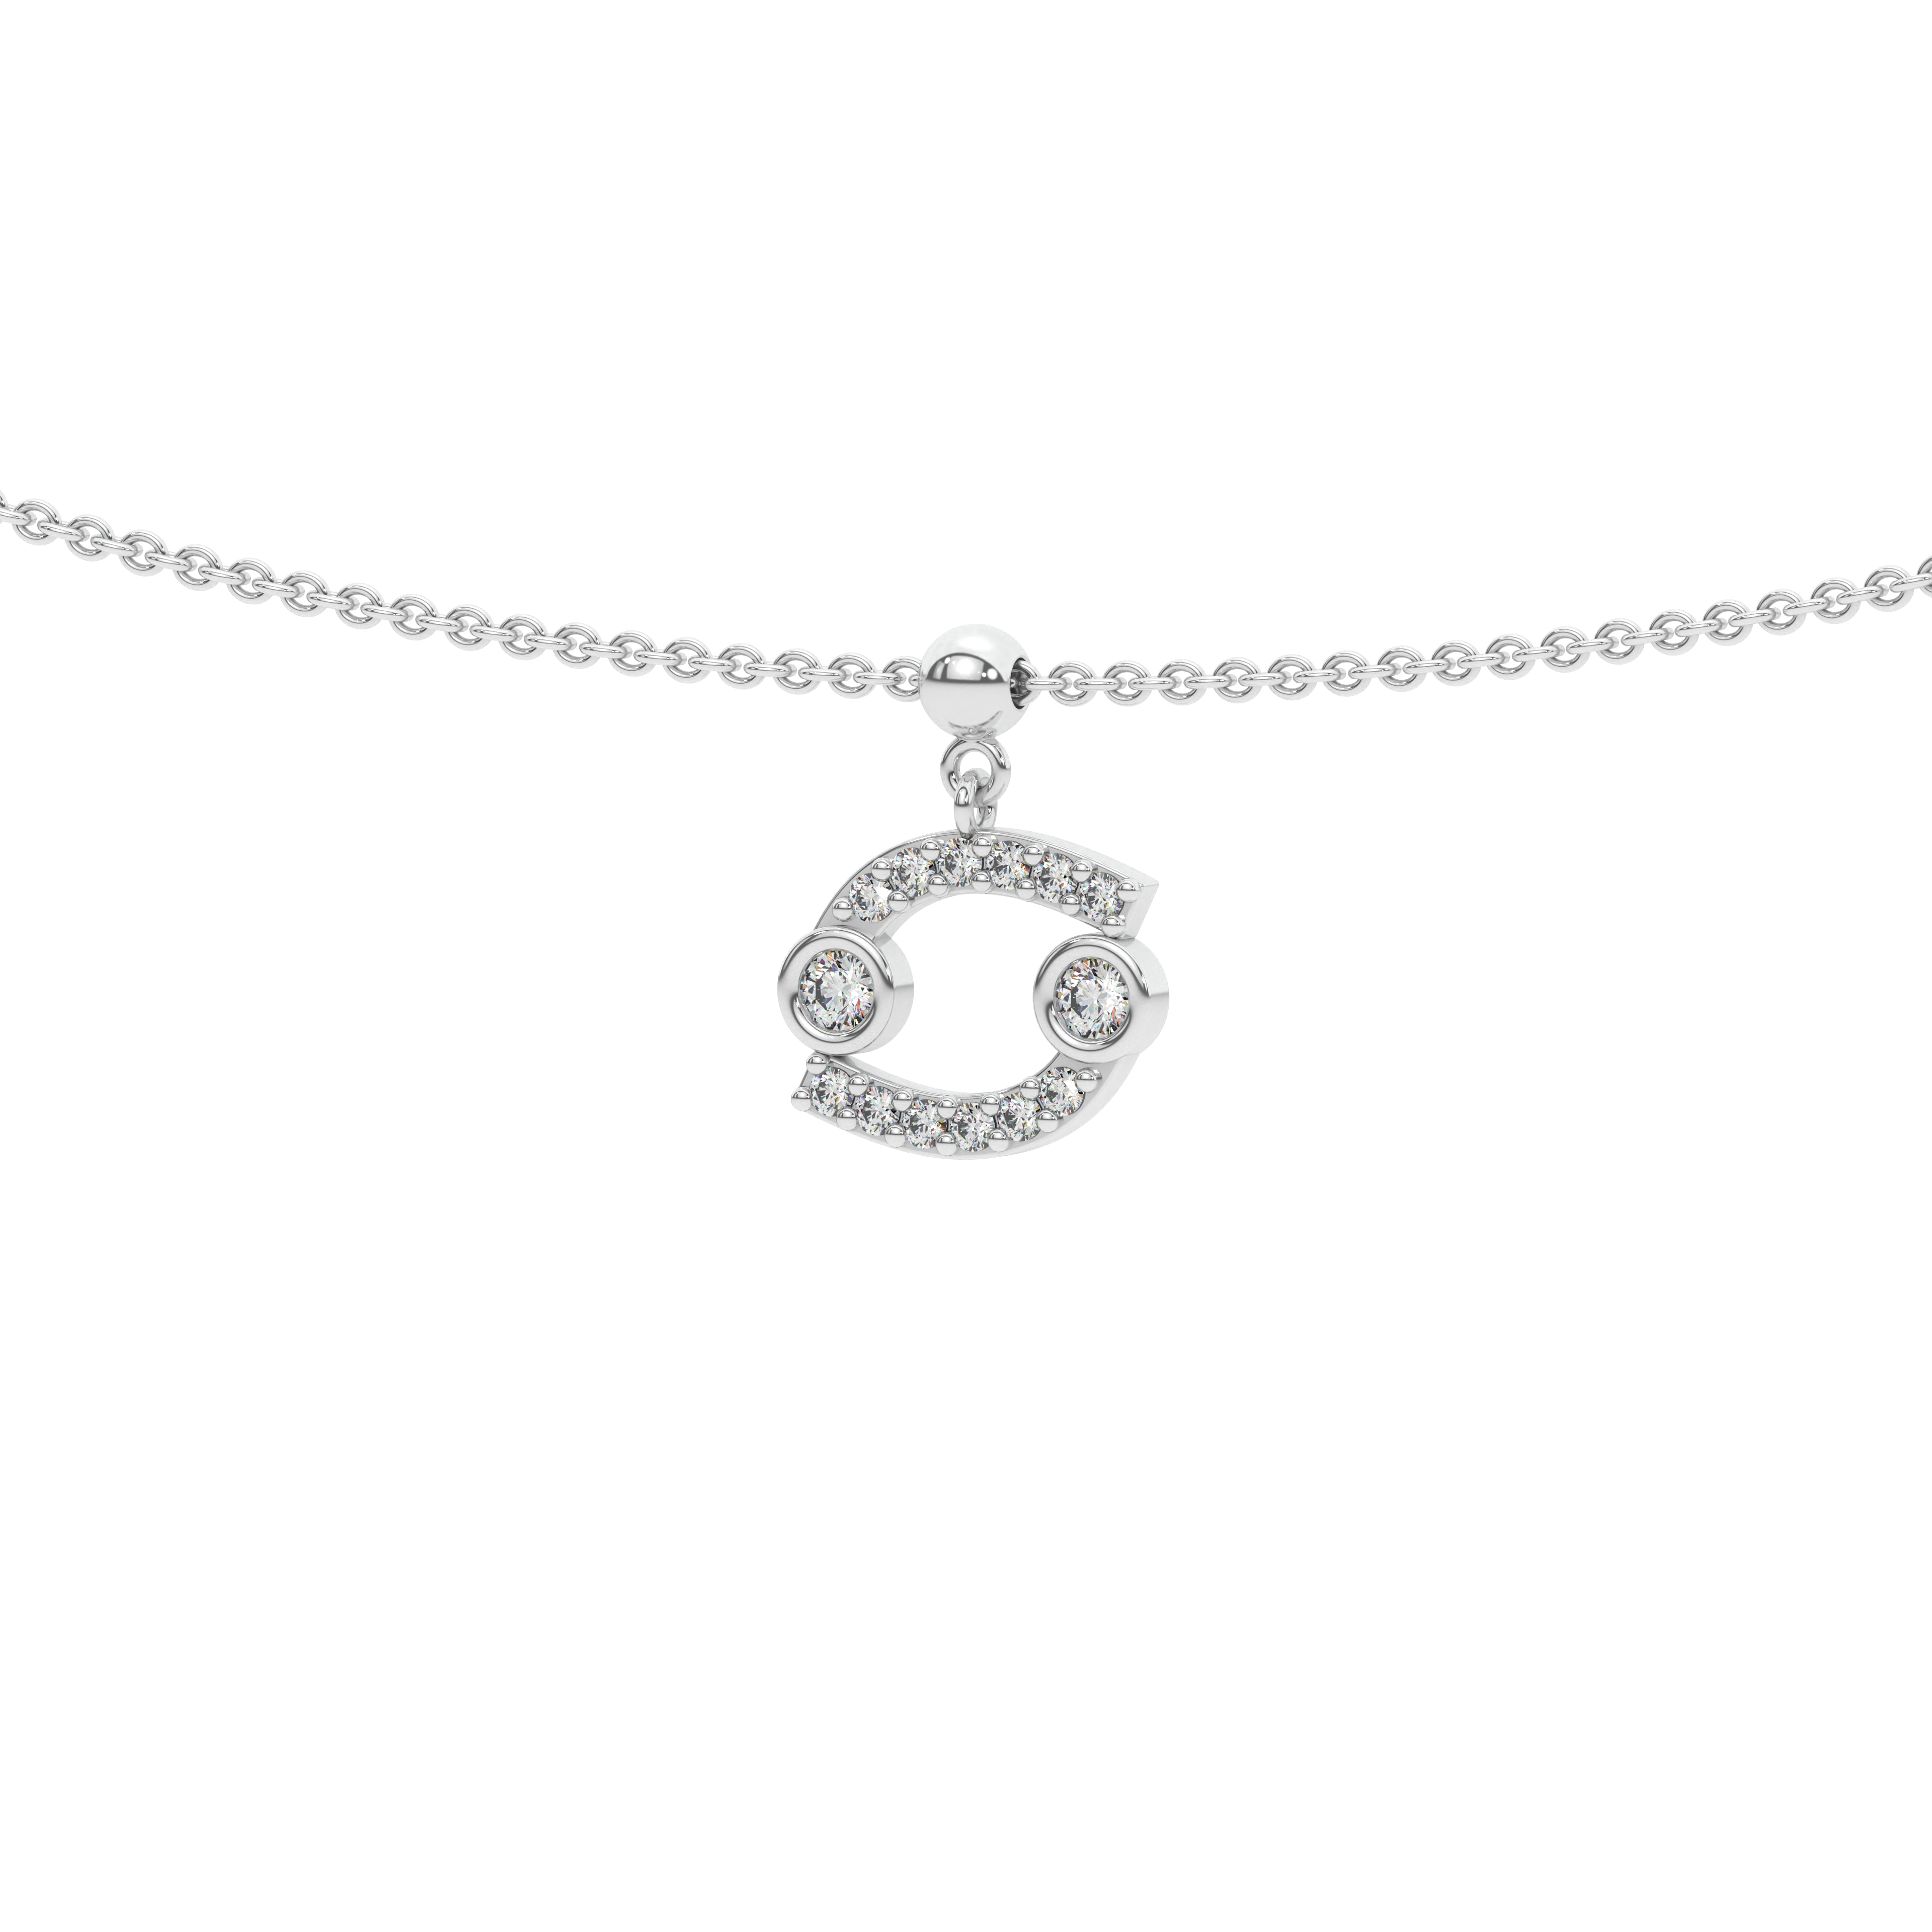 Cancer stone pave' zodiac necklace